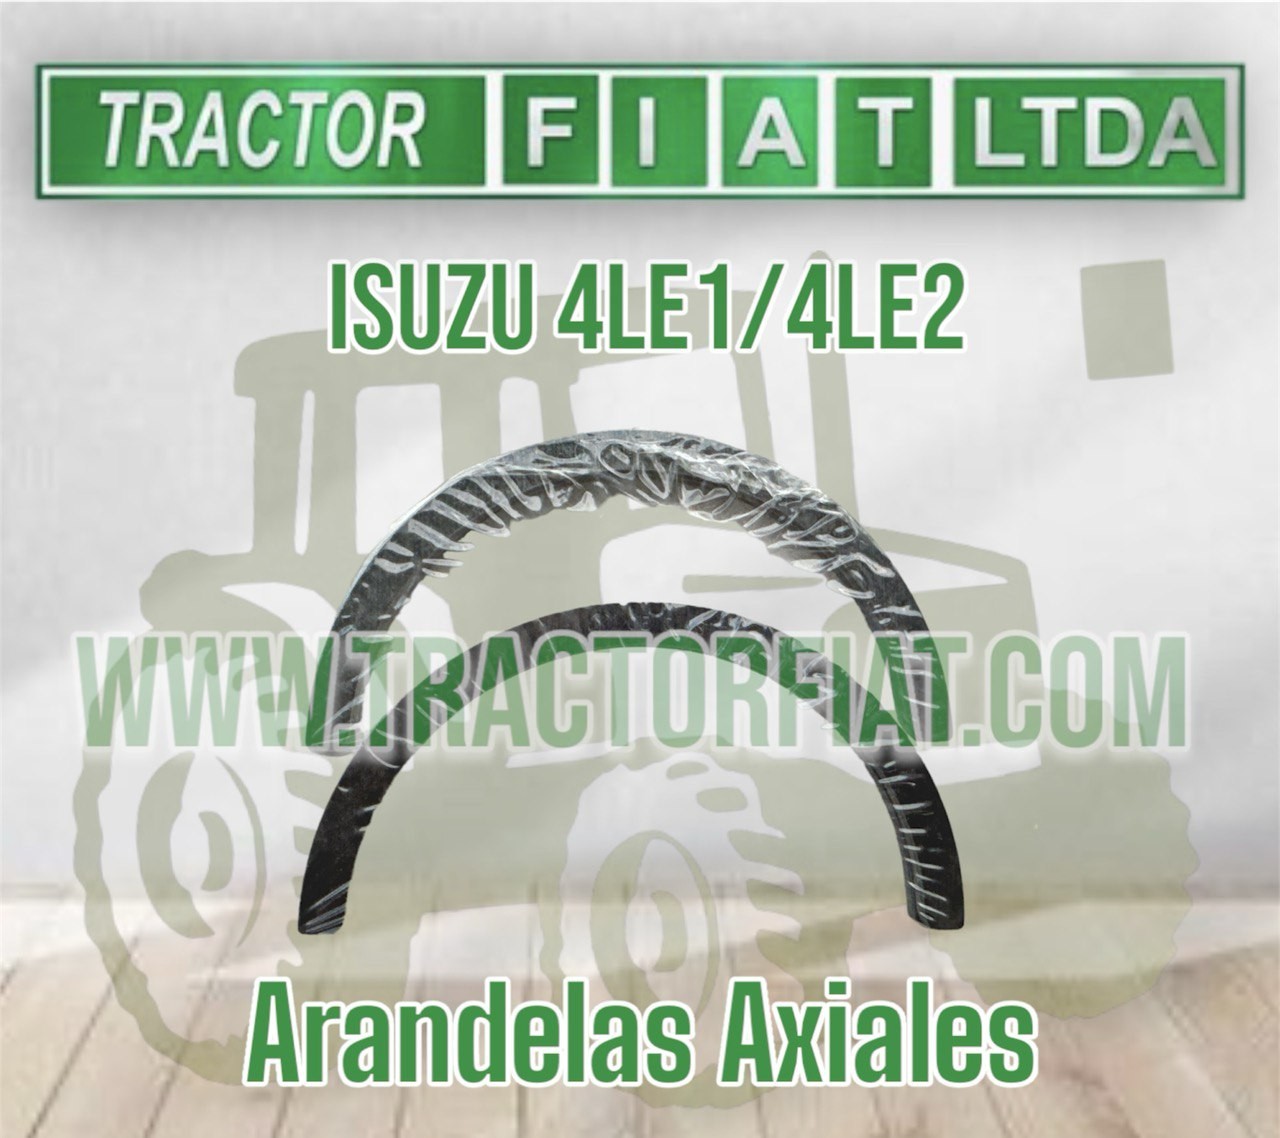 ARANDELAS AXIALES - MOTOR ISUZU 4LE1/4LE2